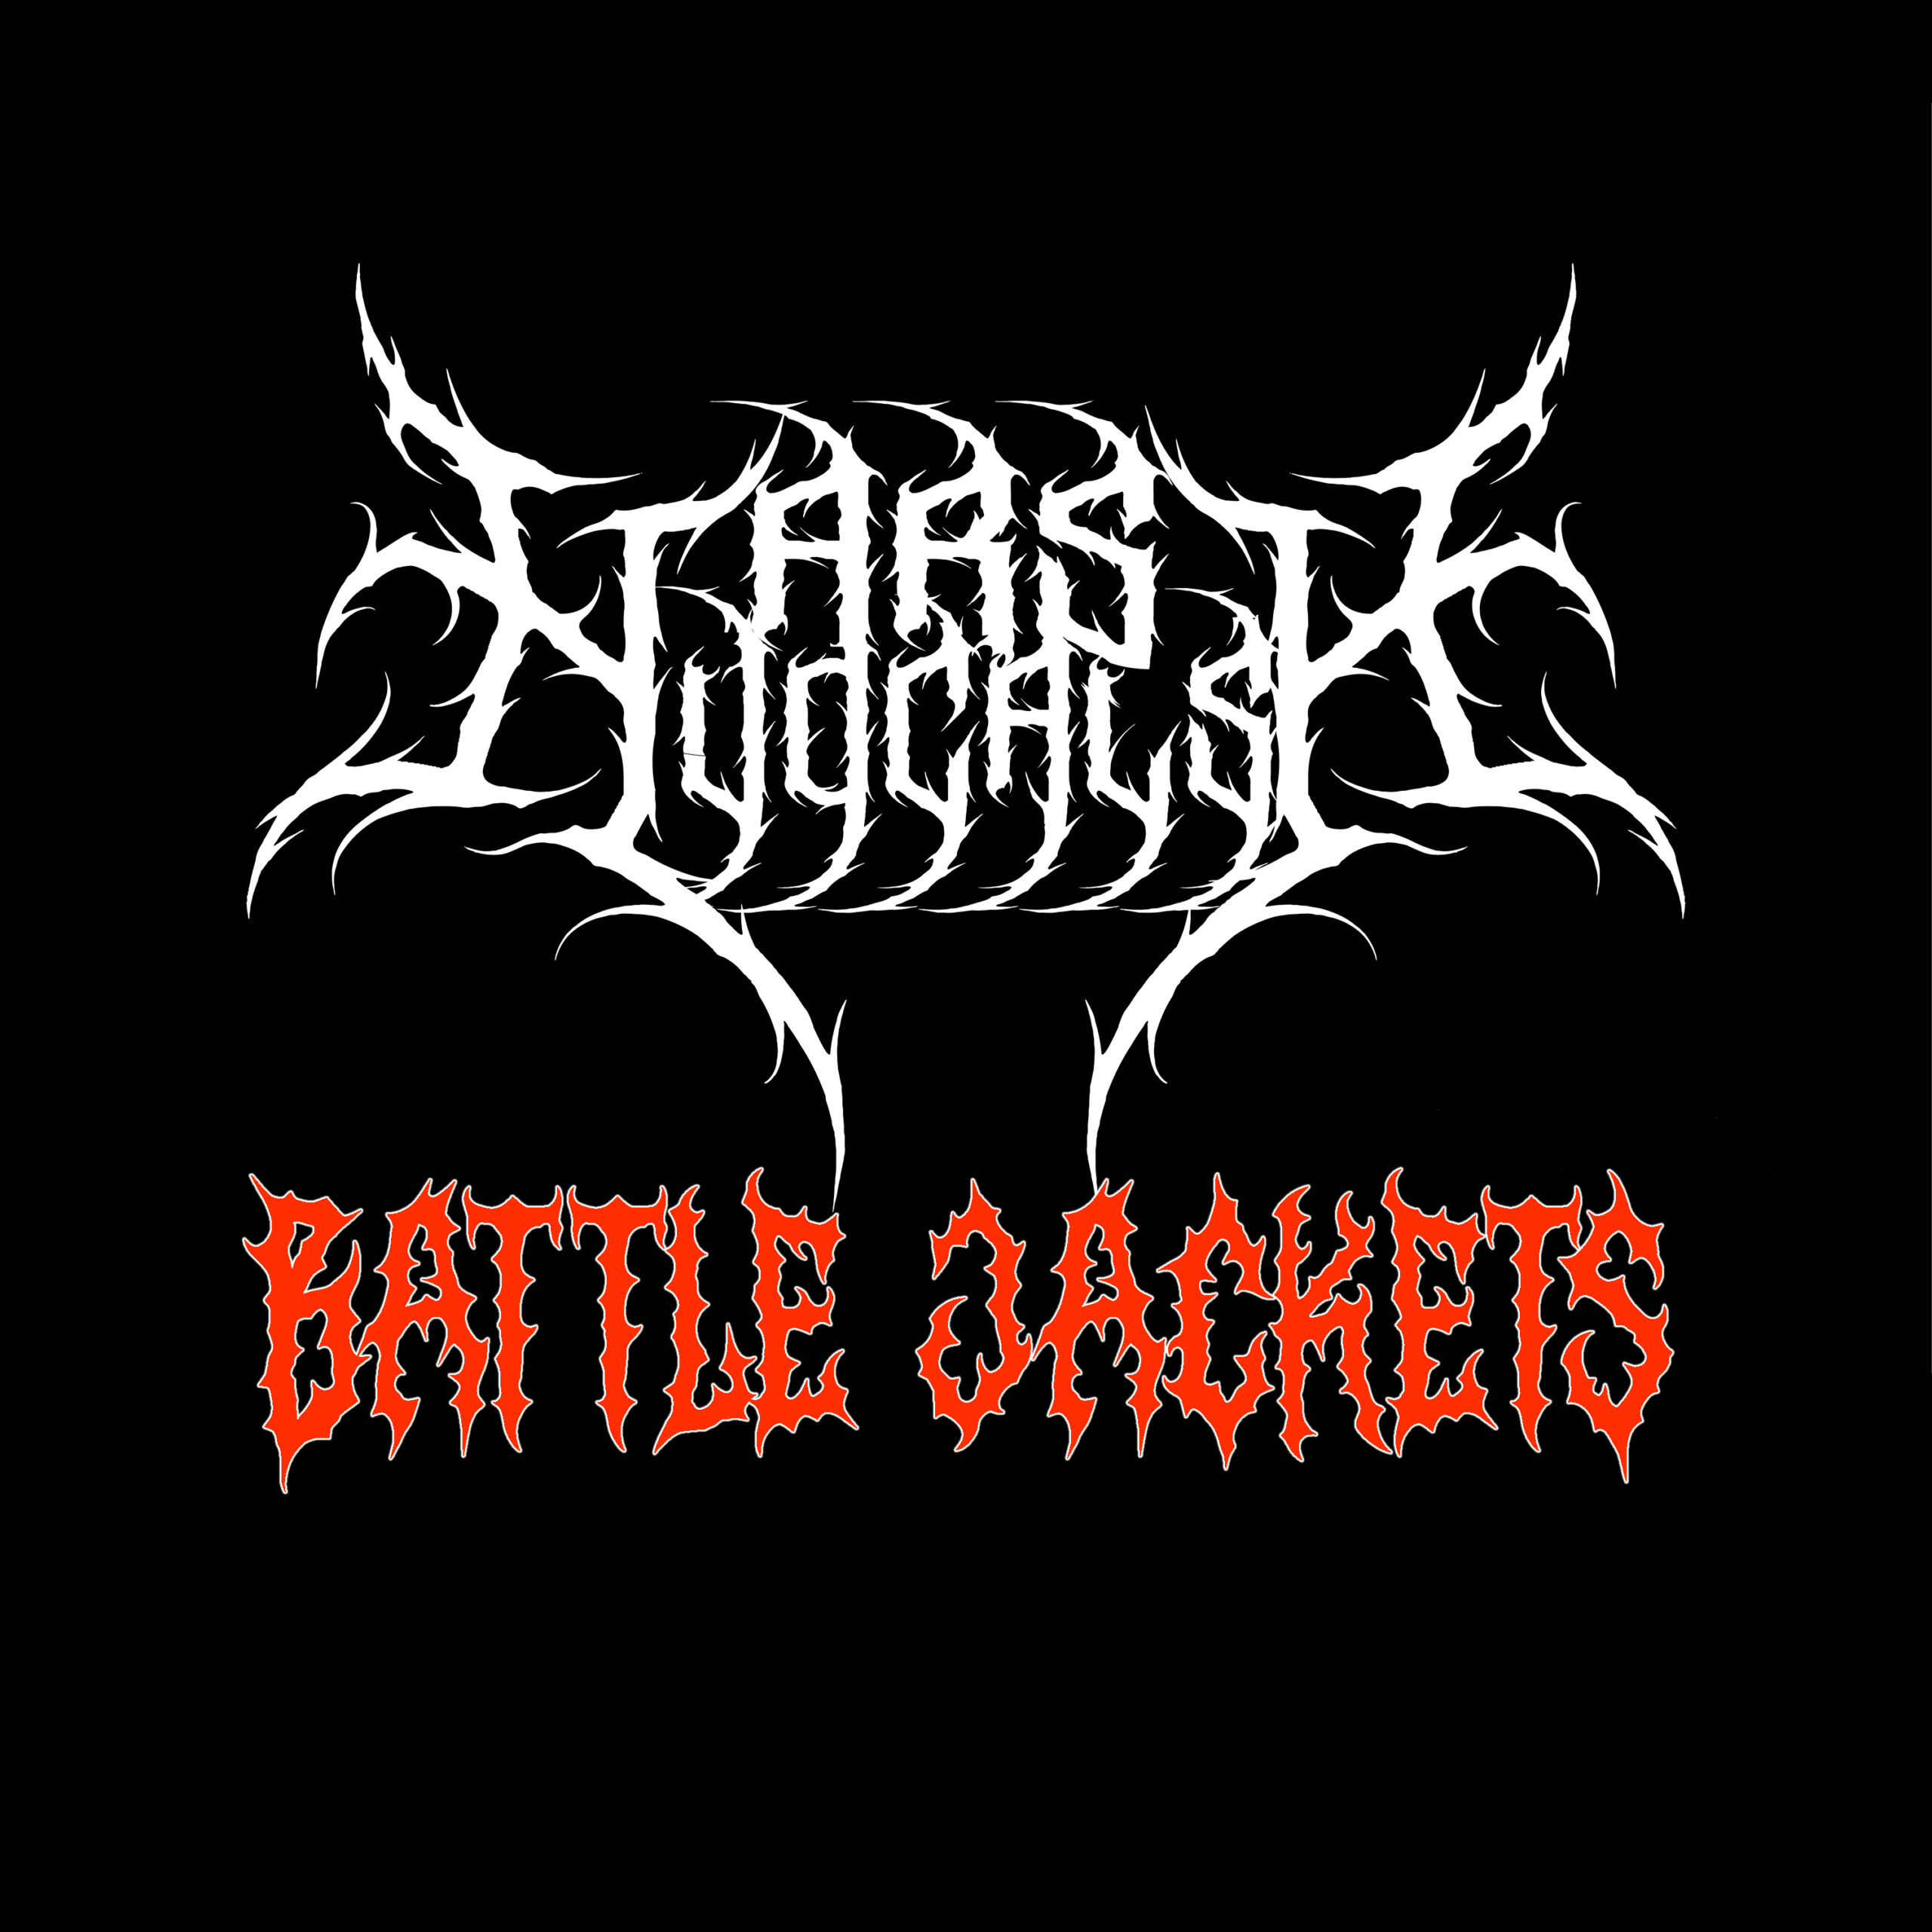 Harsh Vocals – Episode 02 – Battle Jackets